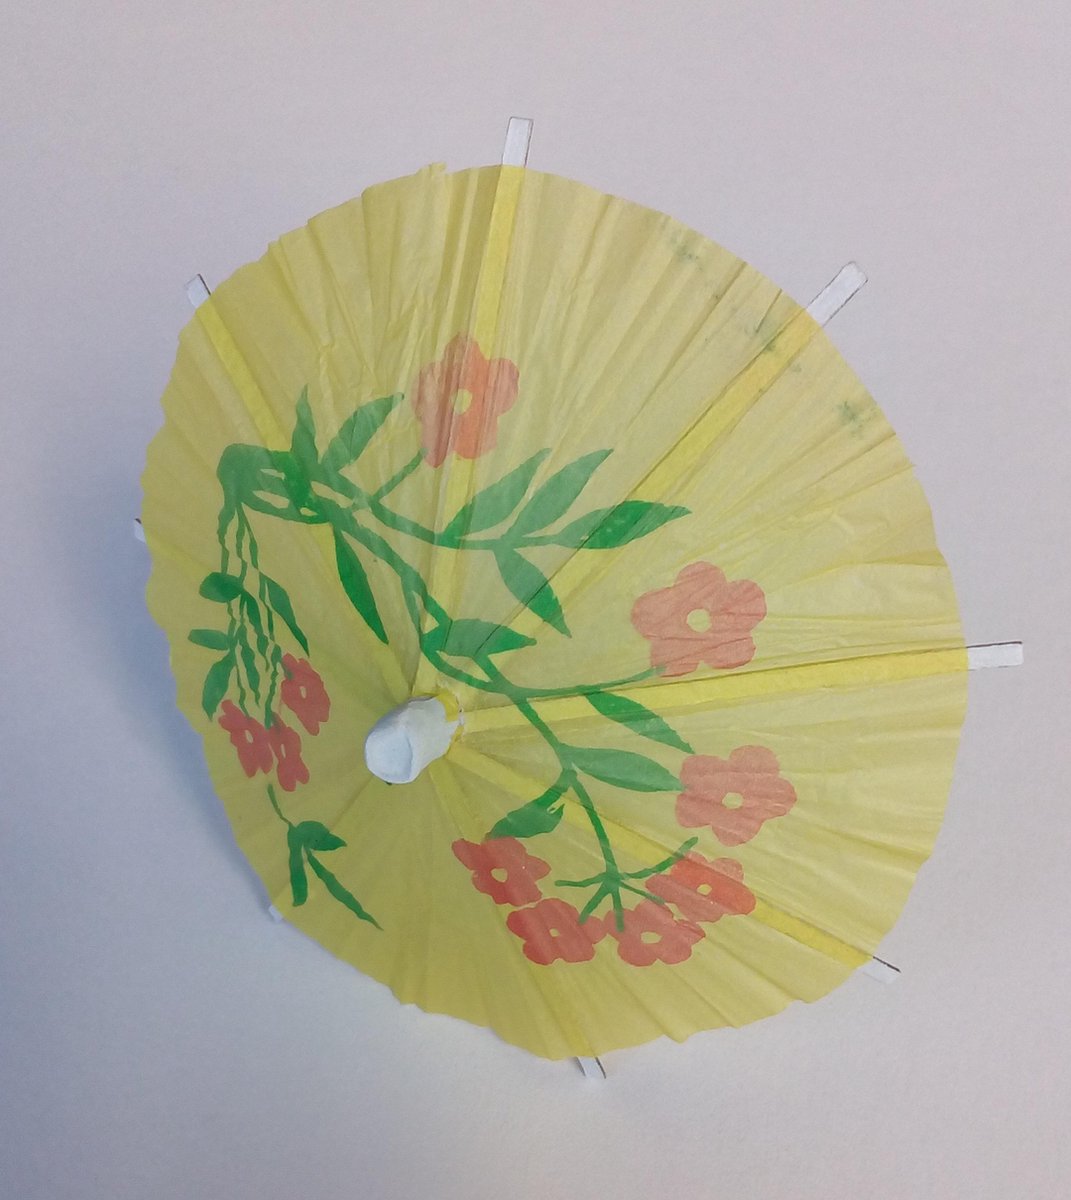 Los Slijm hoeveelheid verkoop parasol van papier - 10 cm hoog - 144 stuks | bol.com